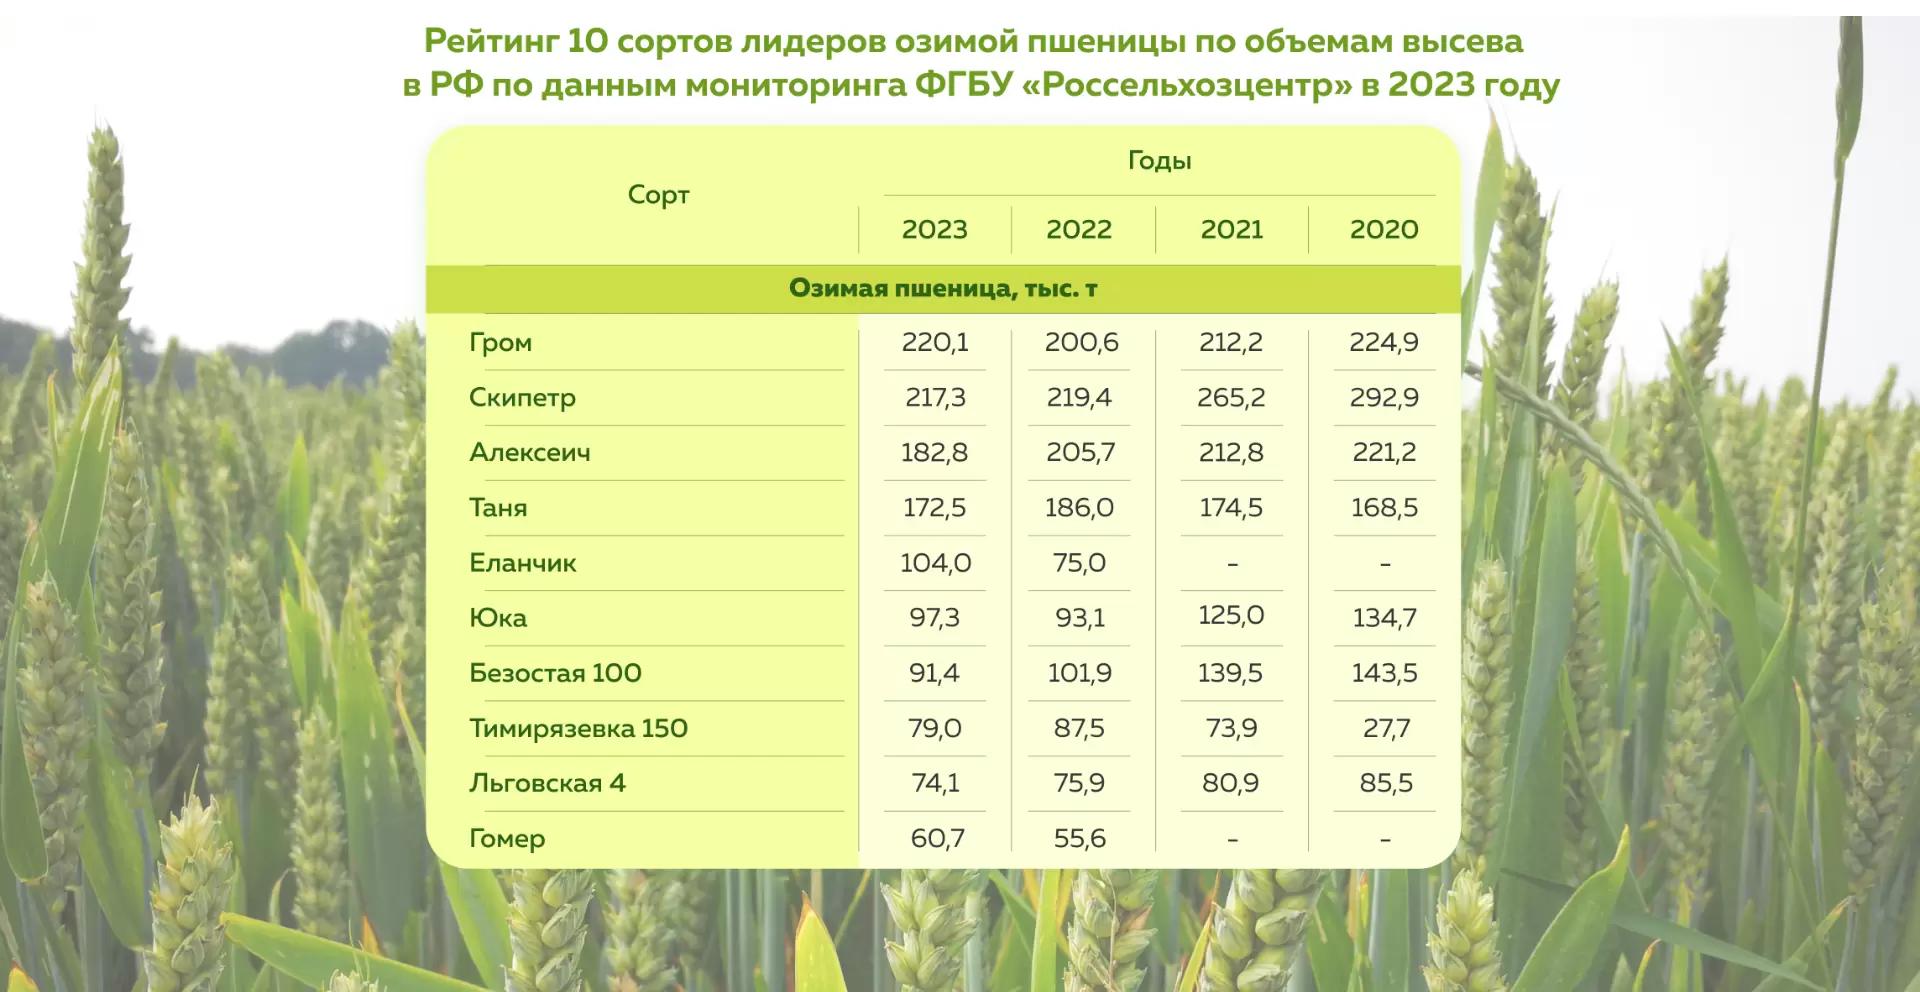 Топ 10 сортов озимой пшеницы за 2023 год